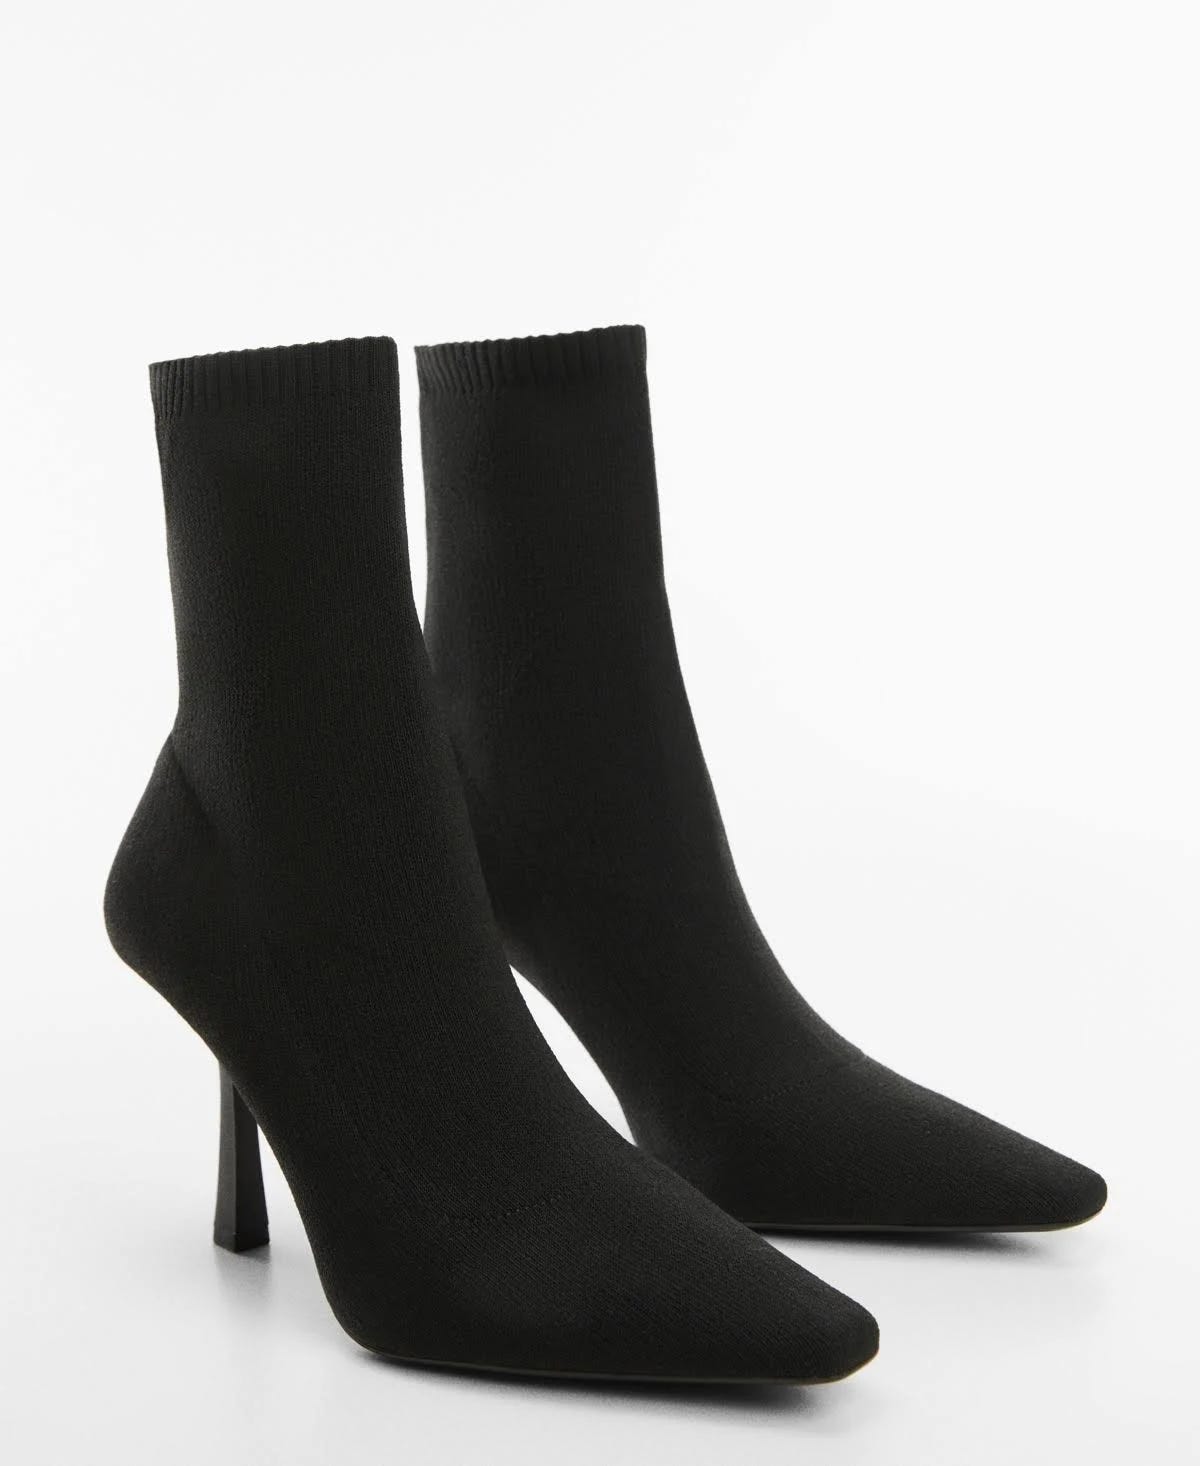 Sophisticated Black Heel Sock Boots for Women - Elastane & Polyester Upper, Slip-On Closure | Image